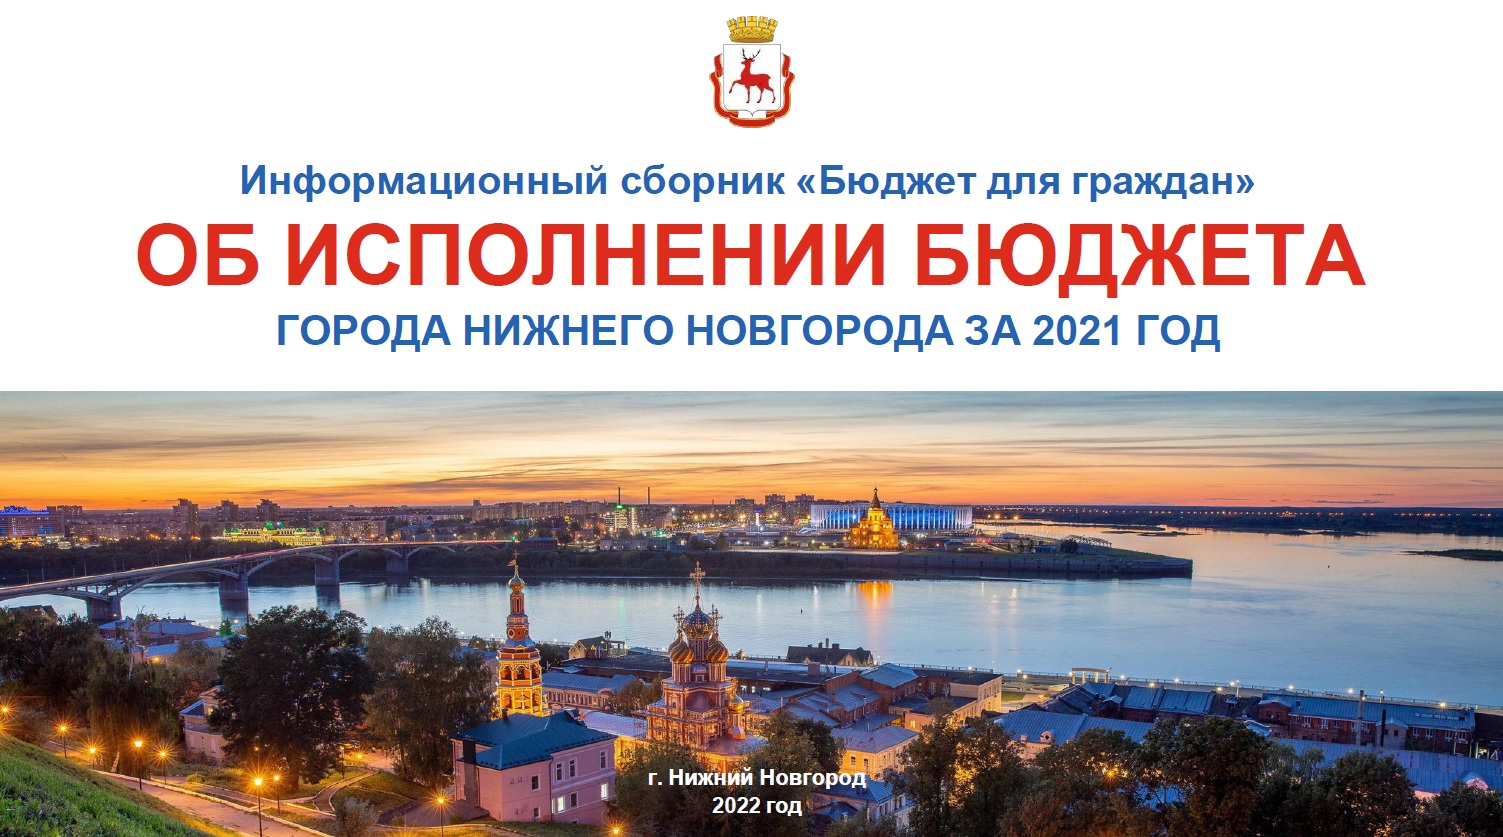 Бюджет для граждан к отчёту об исполнении бюджета города Нижнего Новгорода за 2021 год